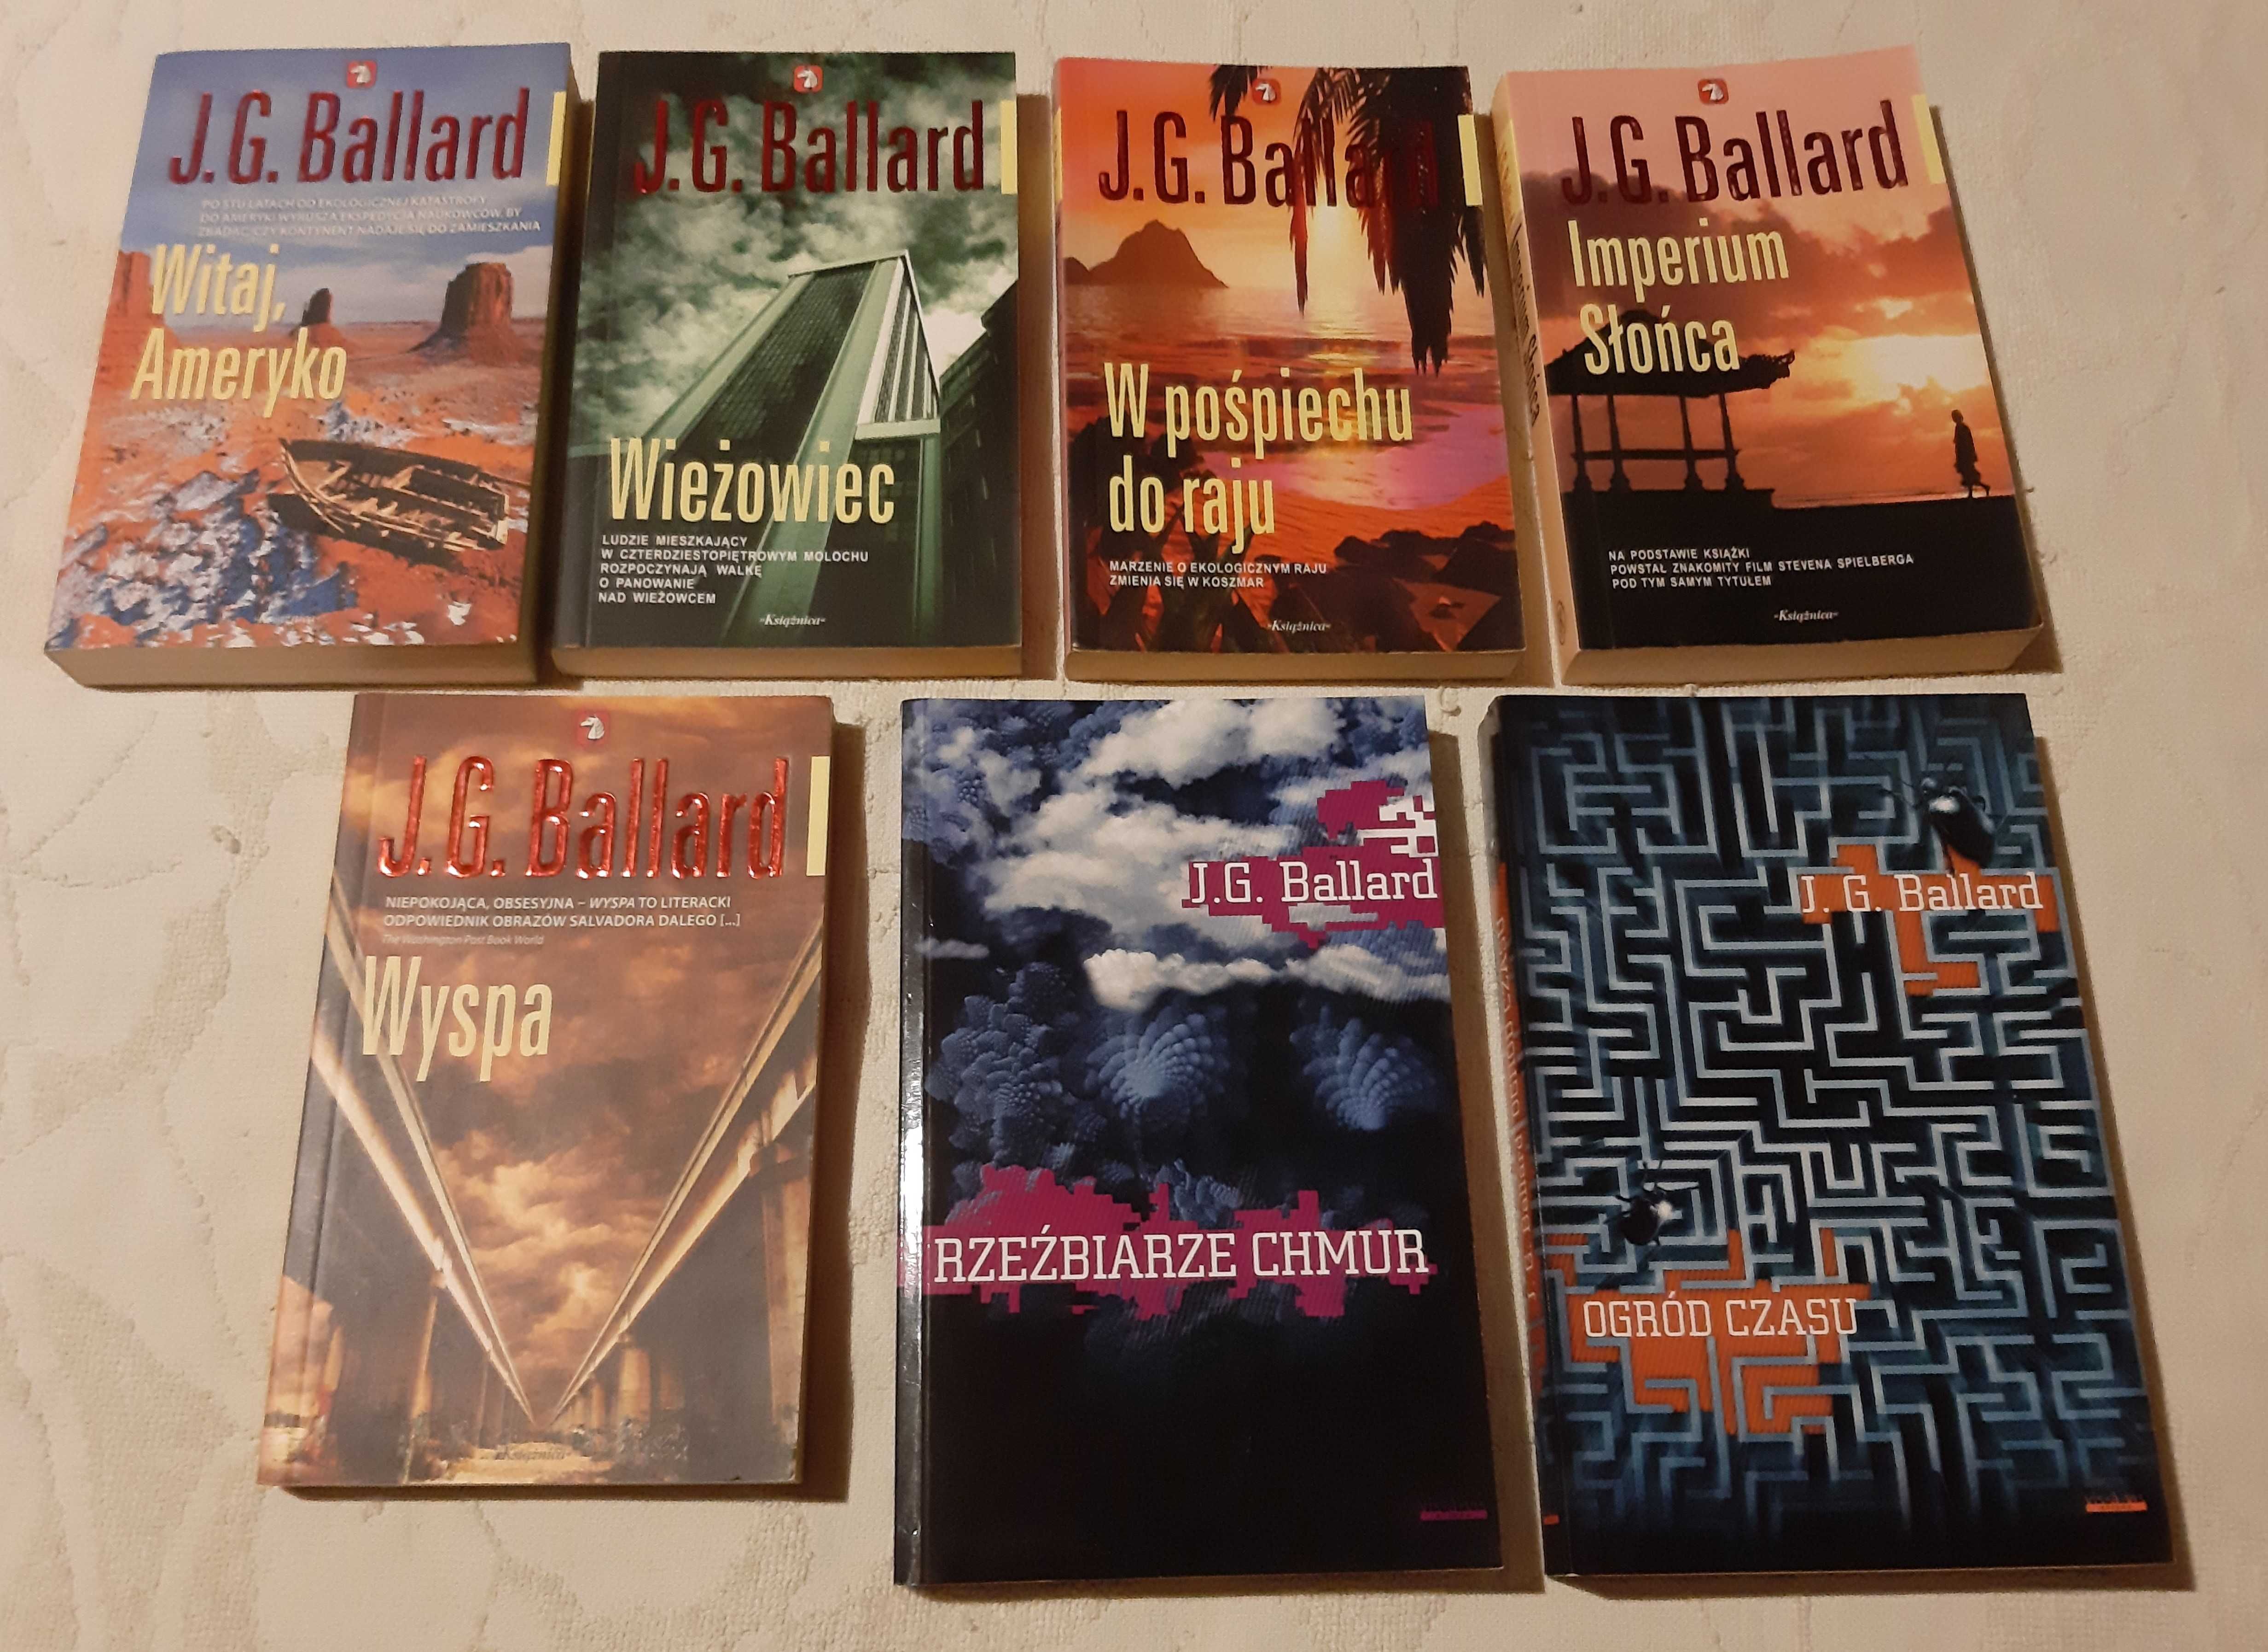 J.G. BALLARD - 7 książek /Wieżowiec Wyspa Ogród czasu i inne/